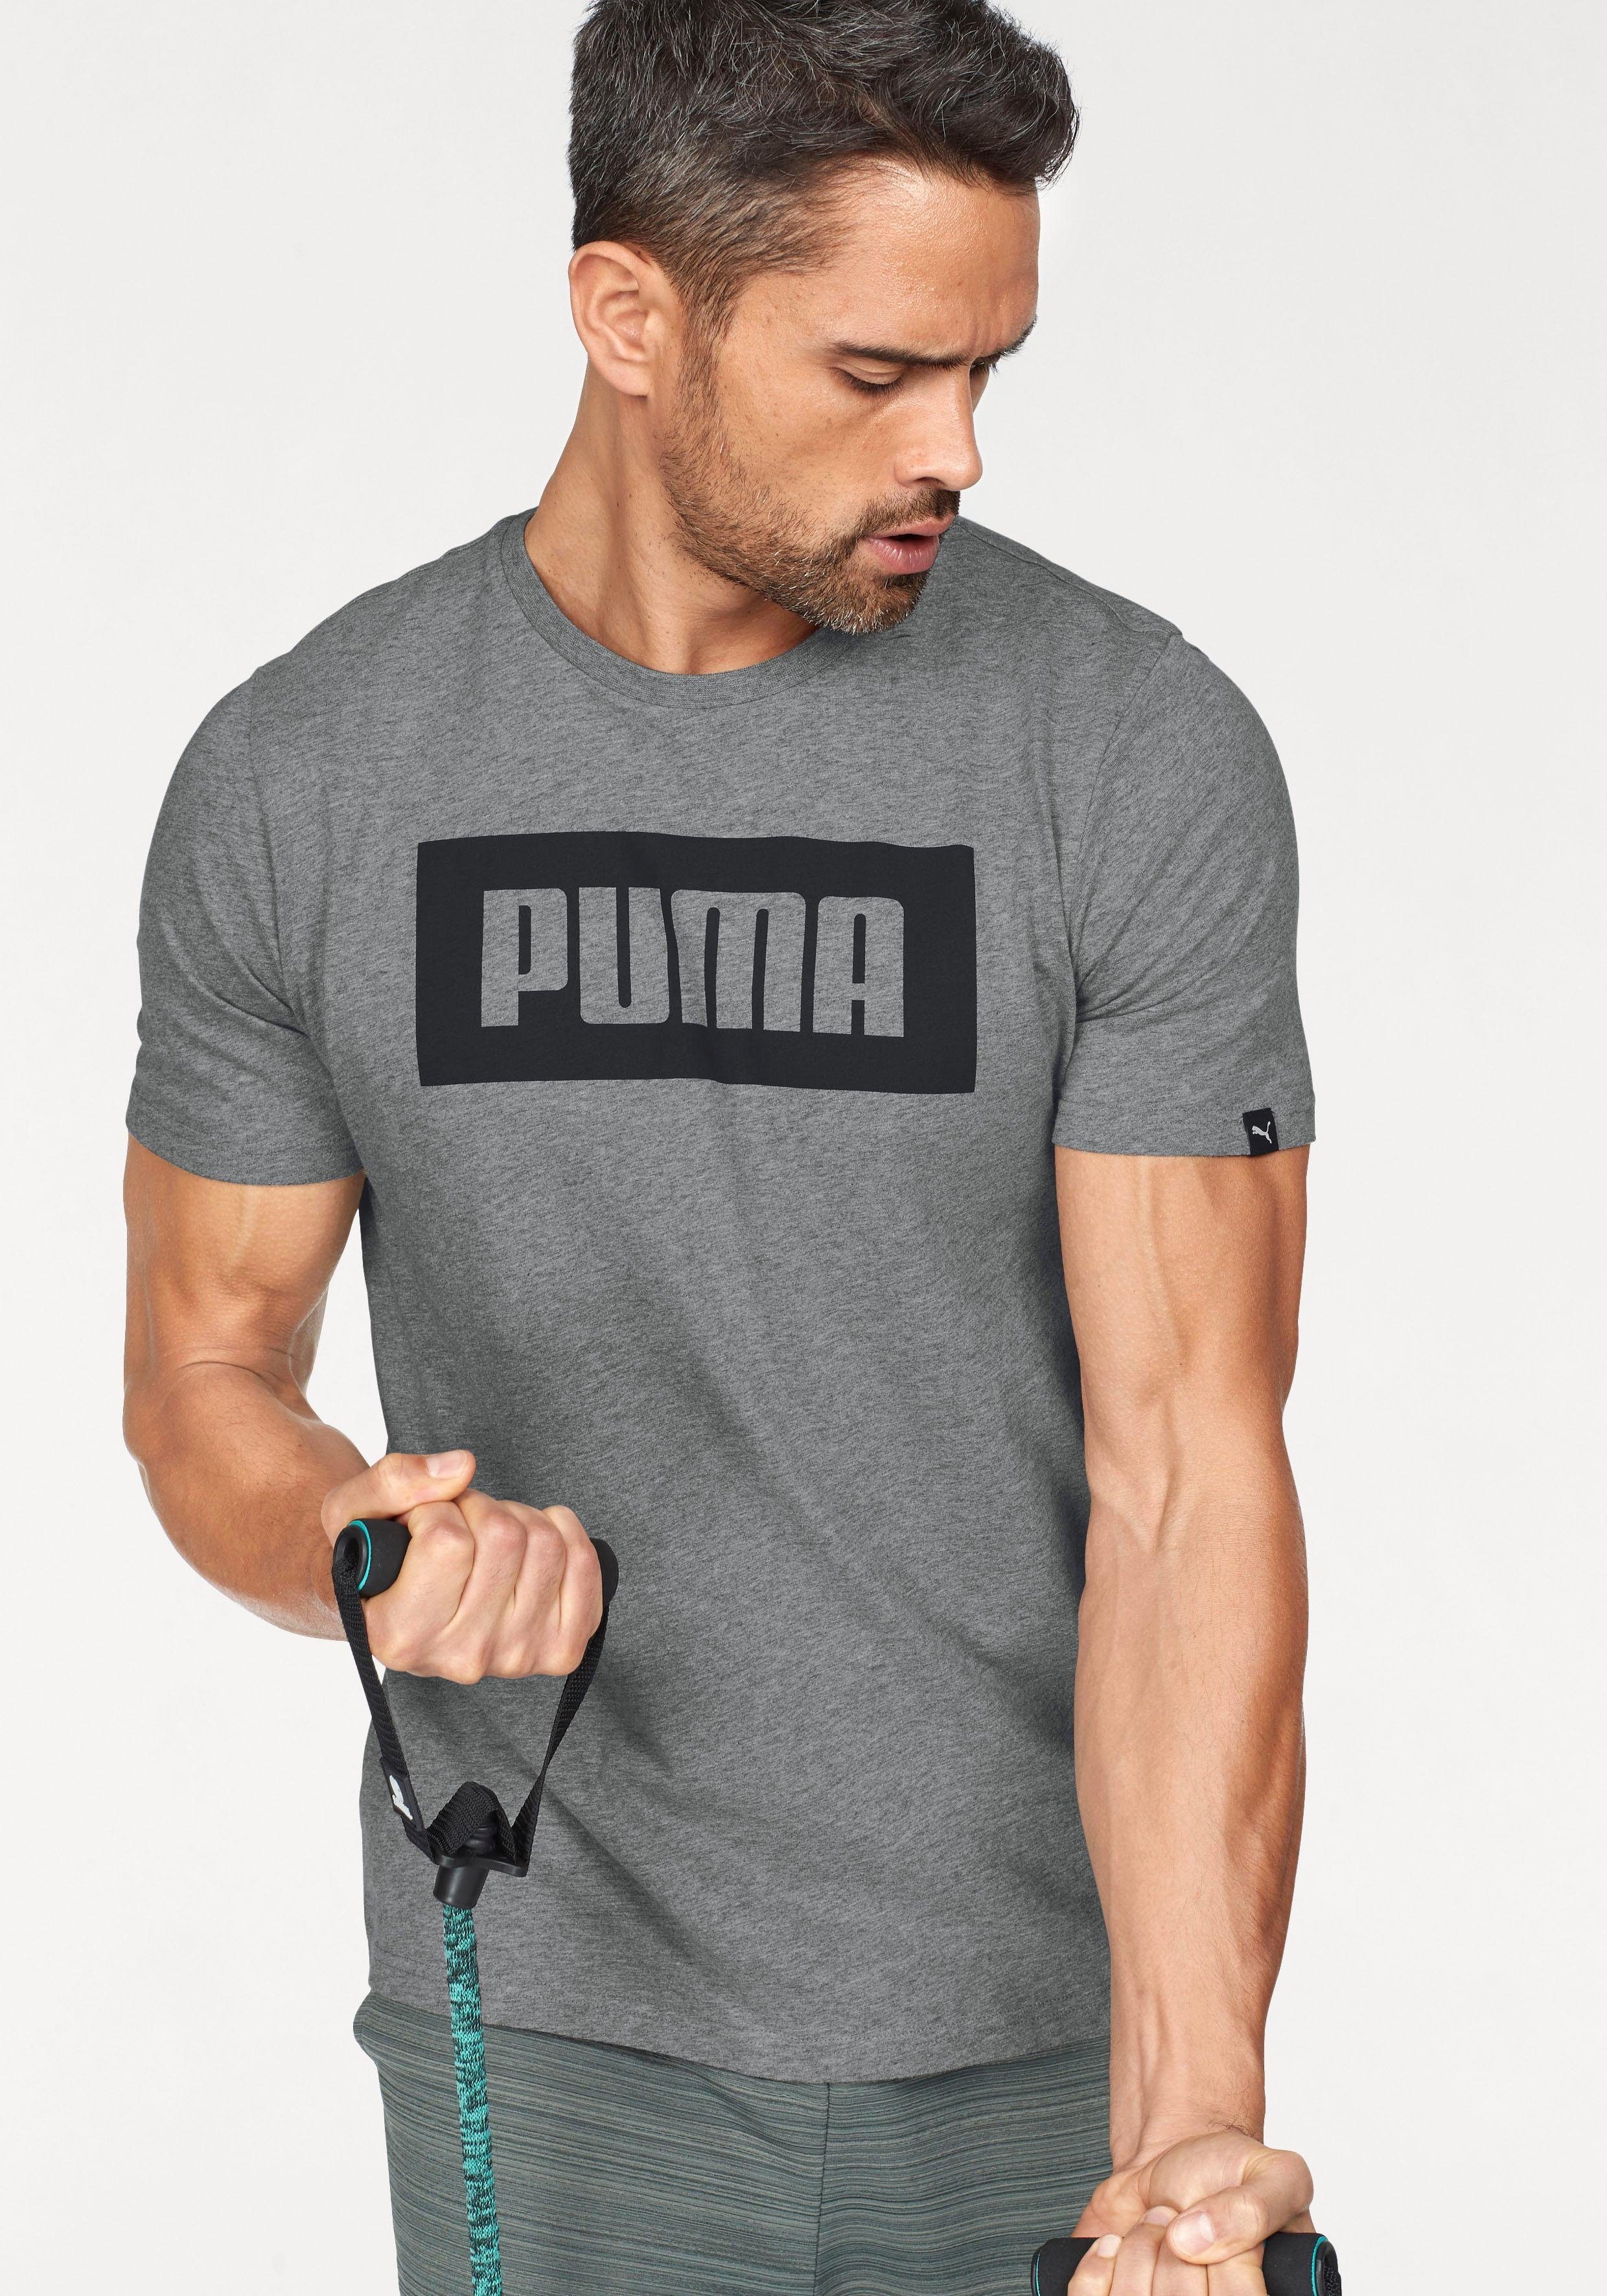 Otto - Puma NU 15% KORTING: PUMA T-shirt